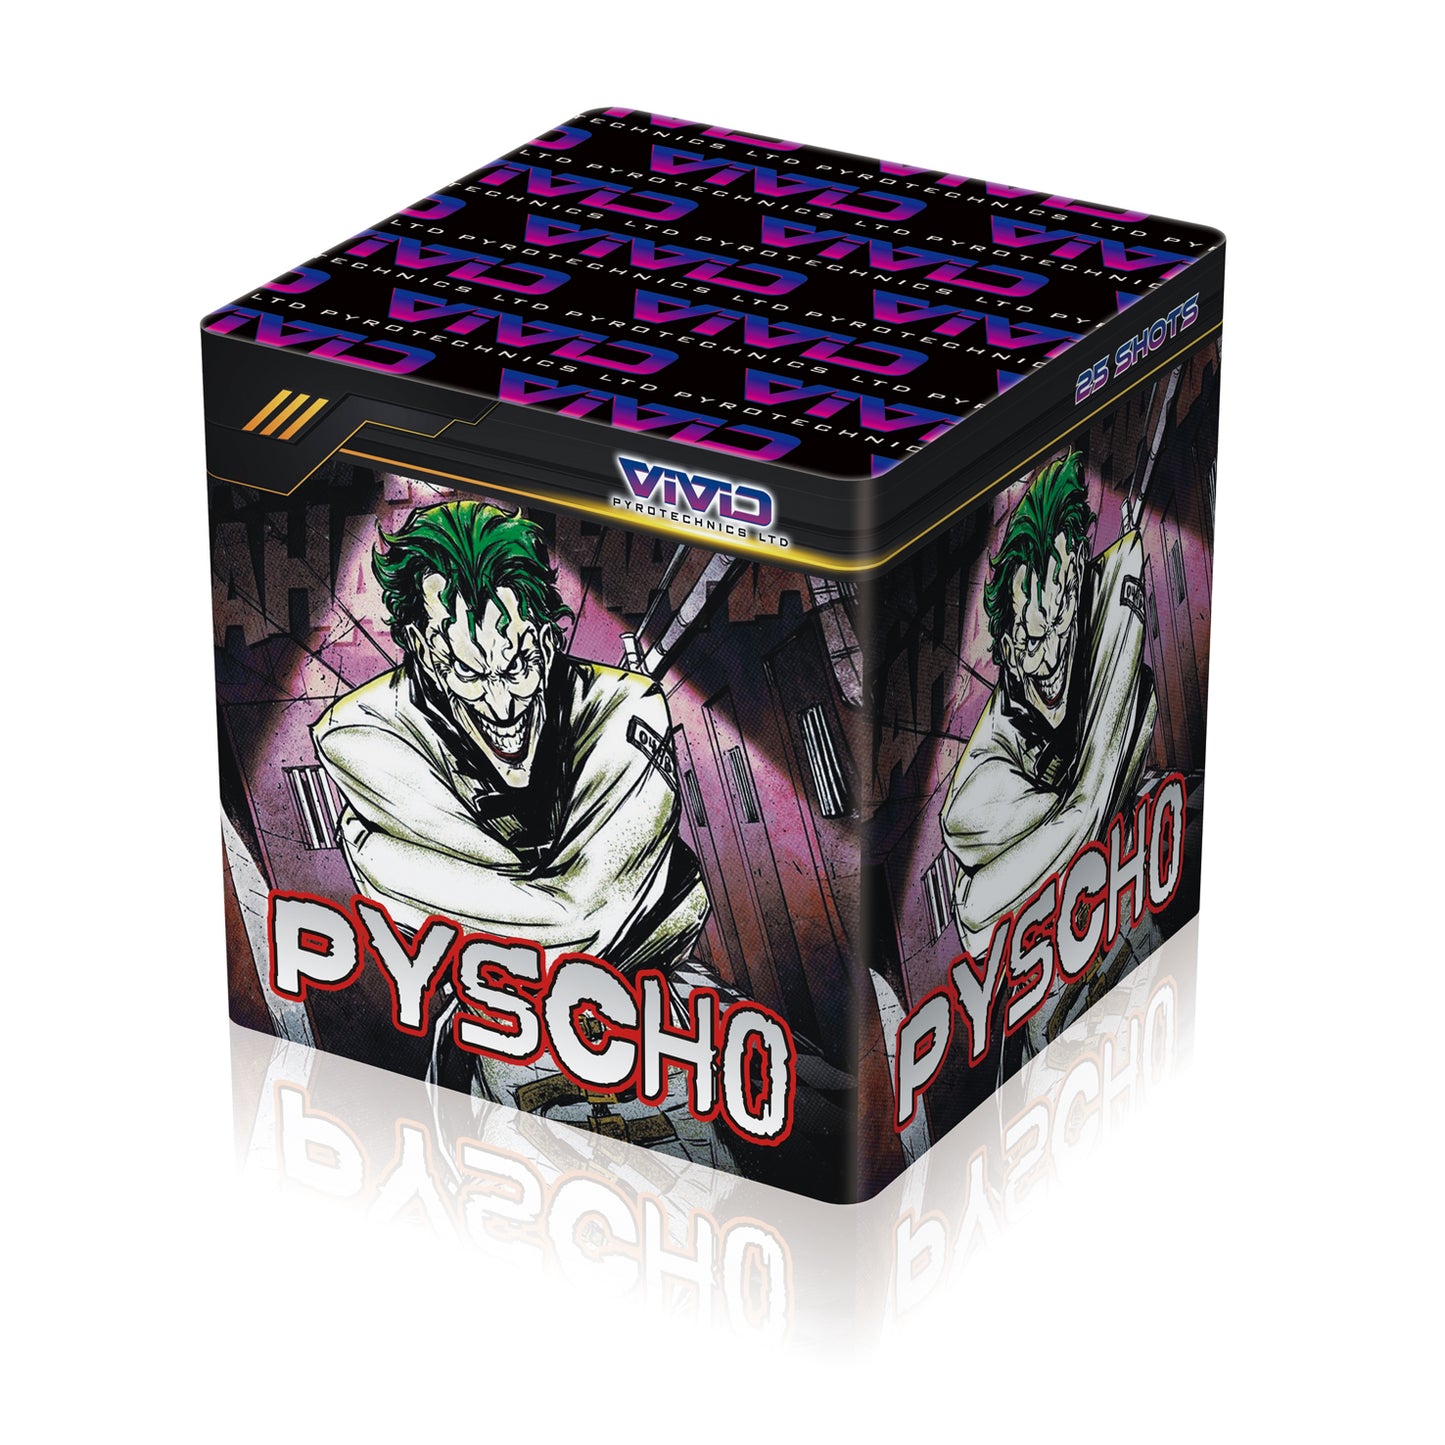 Asylum Pyscho by Vivid Pyrotechnics